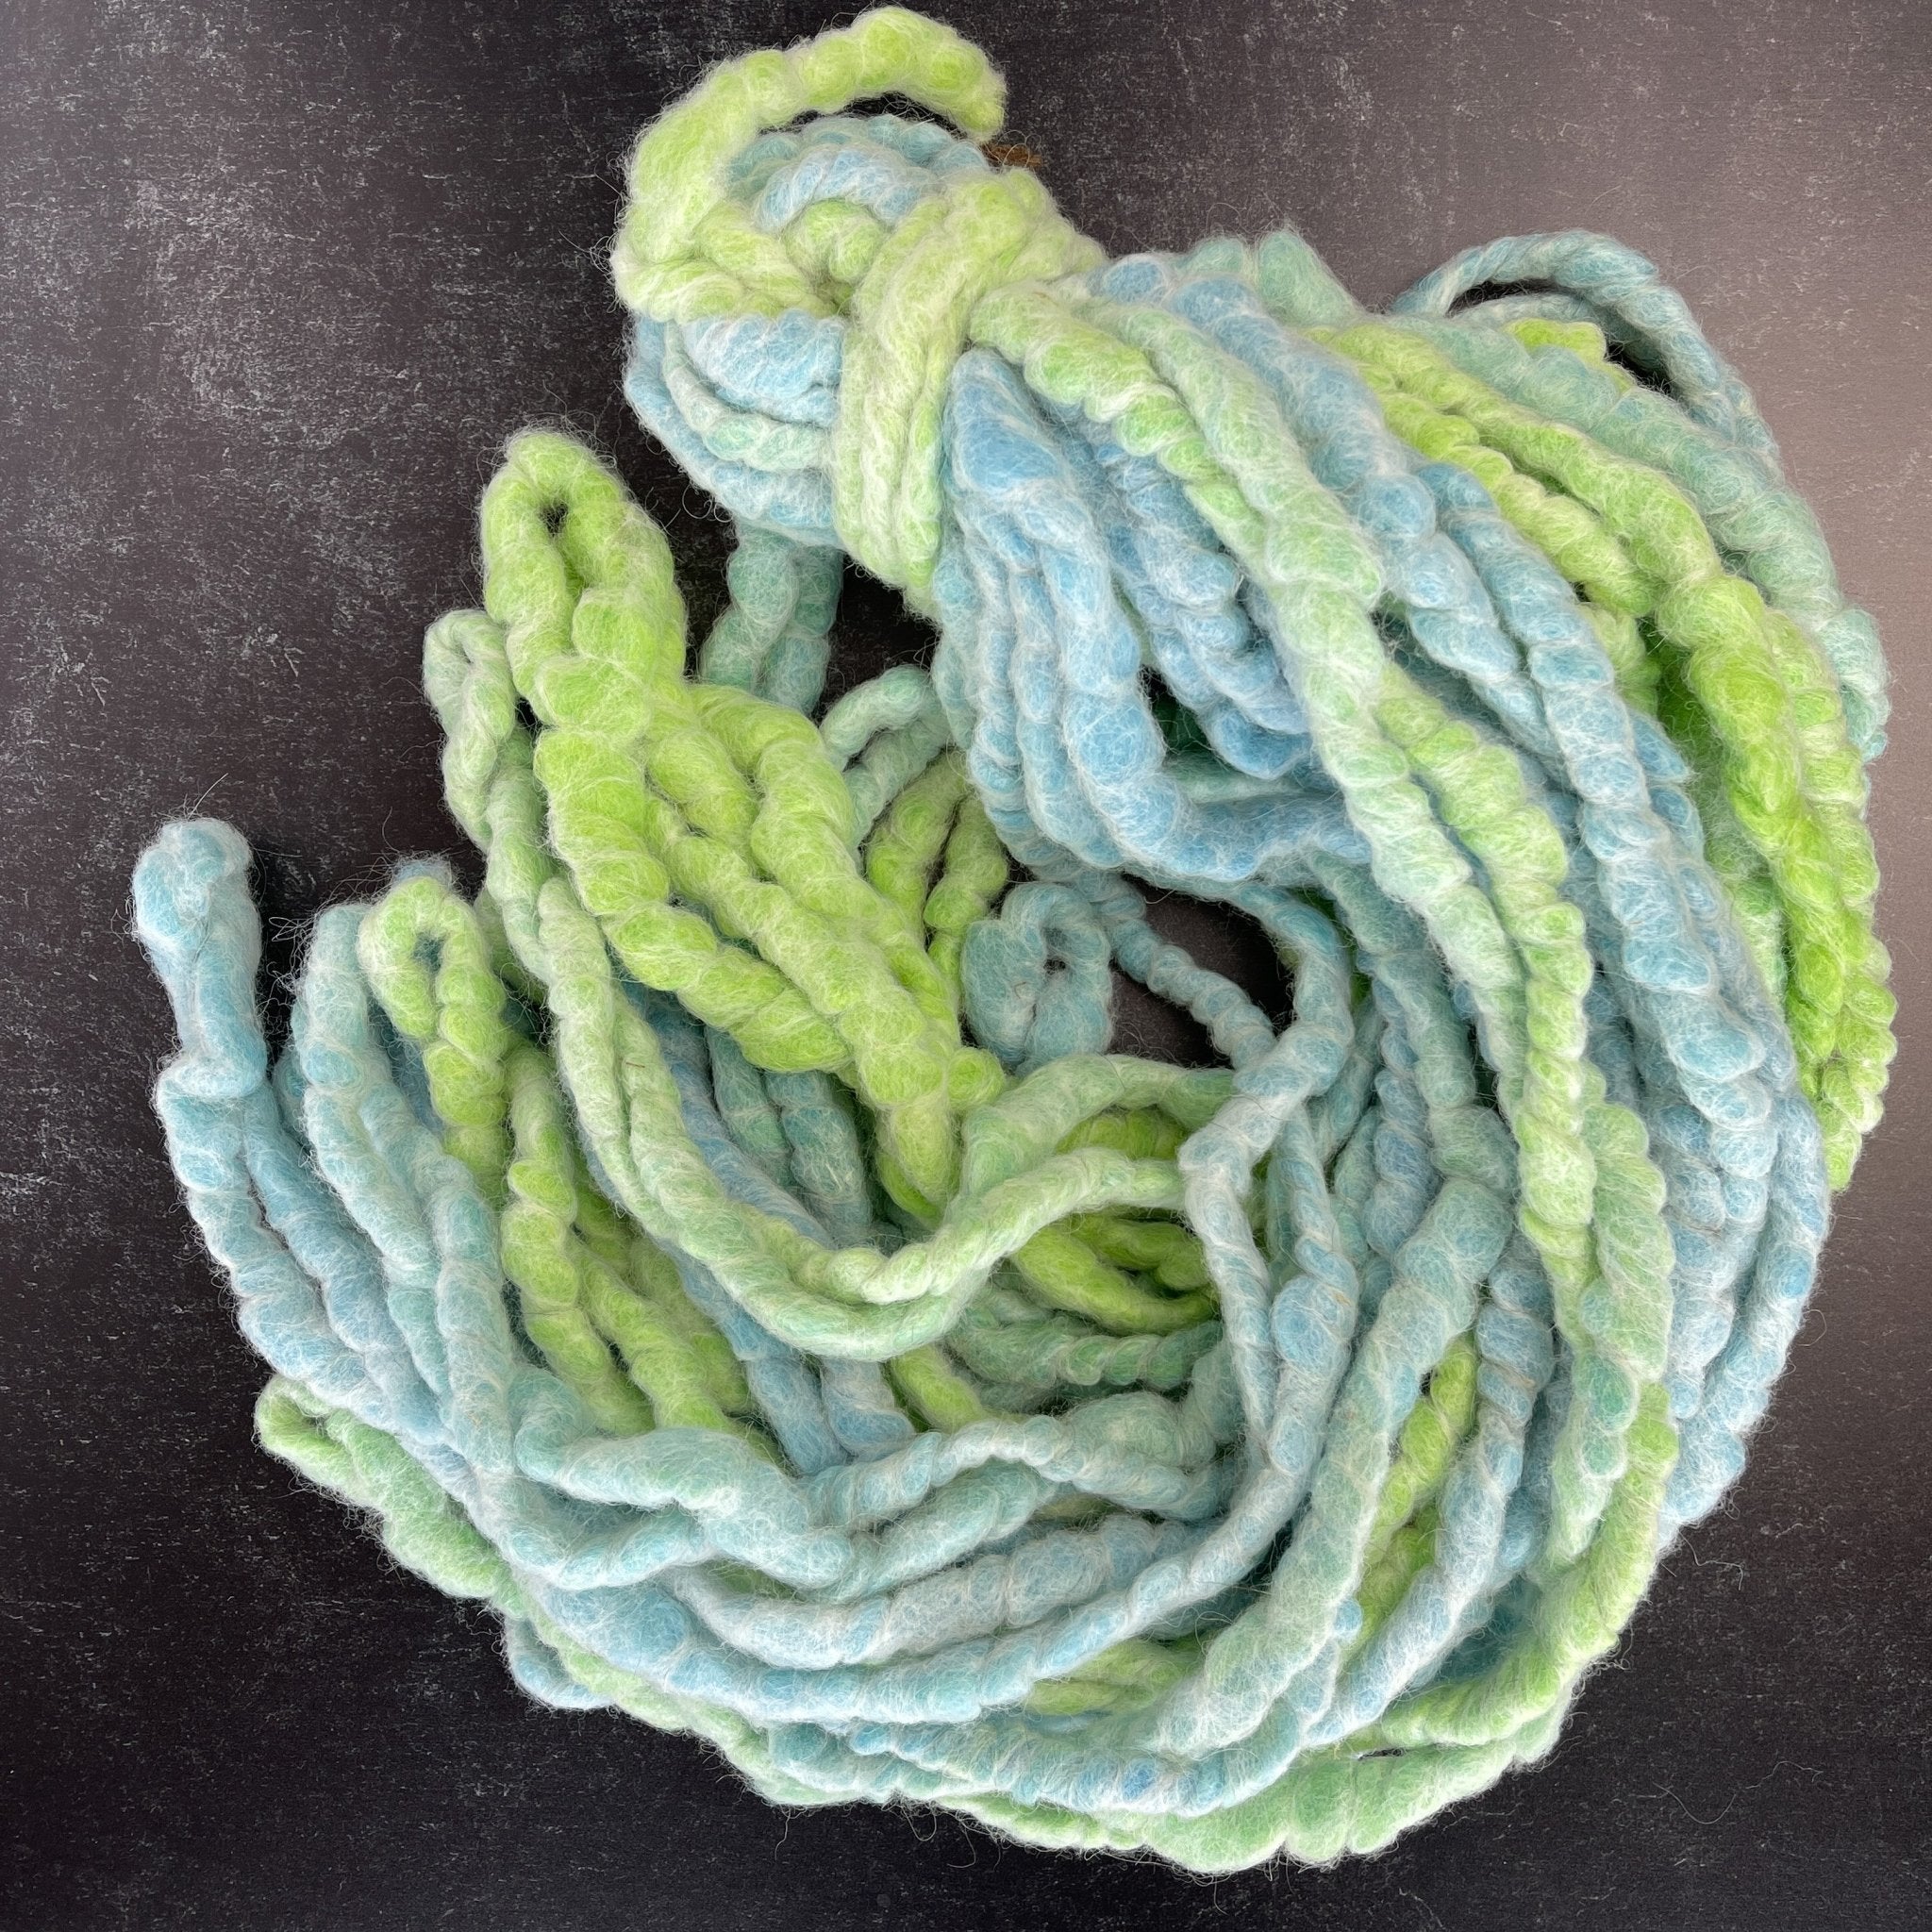 Chunky Yarn Core Spun Wool Yarn - Green Blue Neon 100 feet